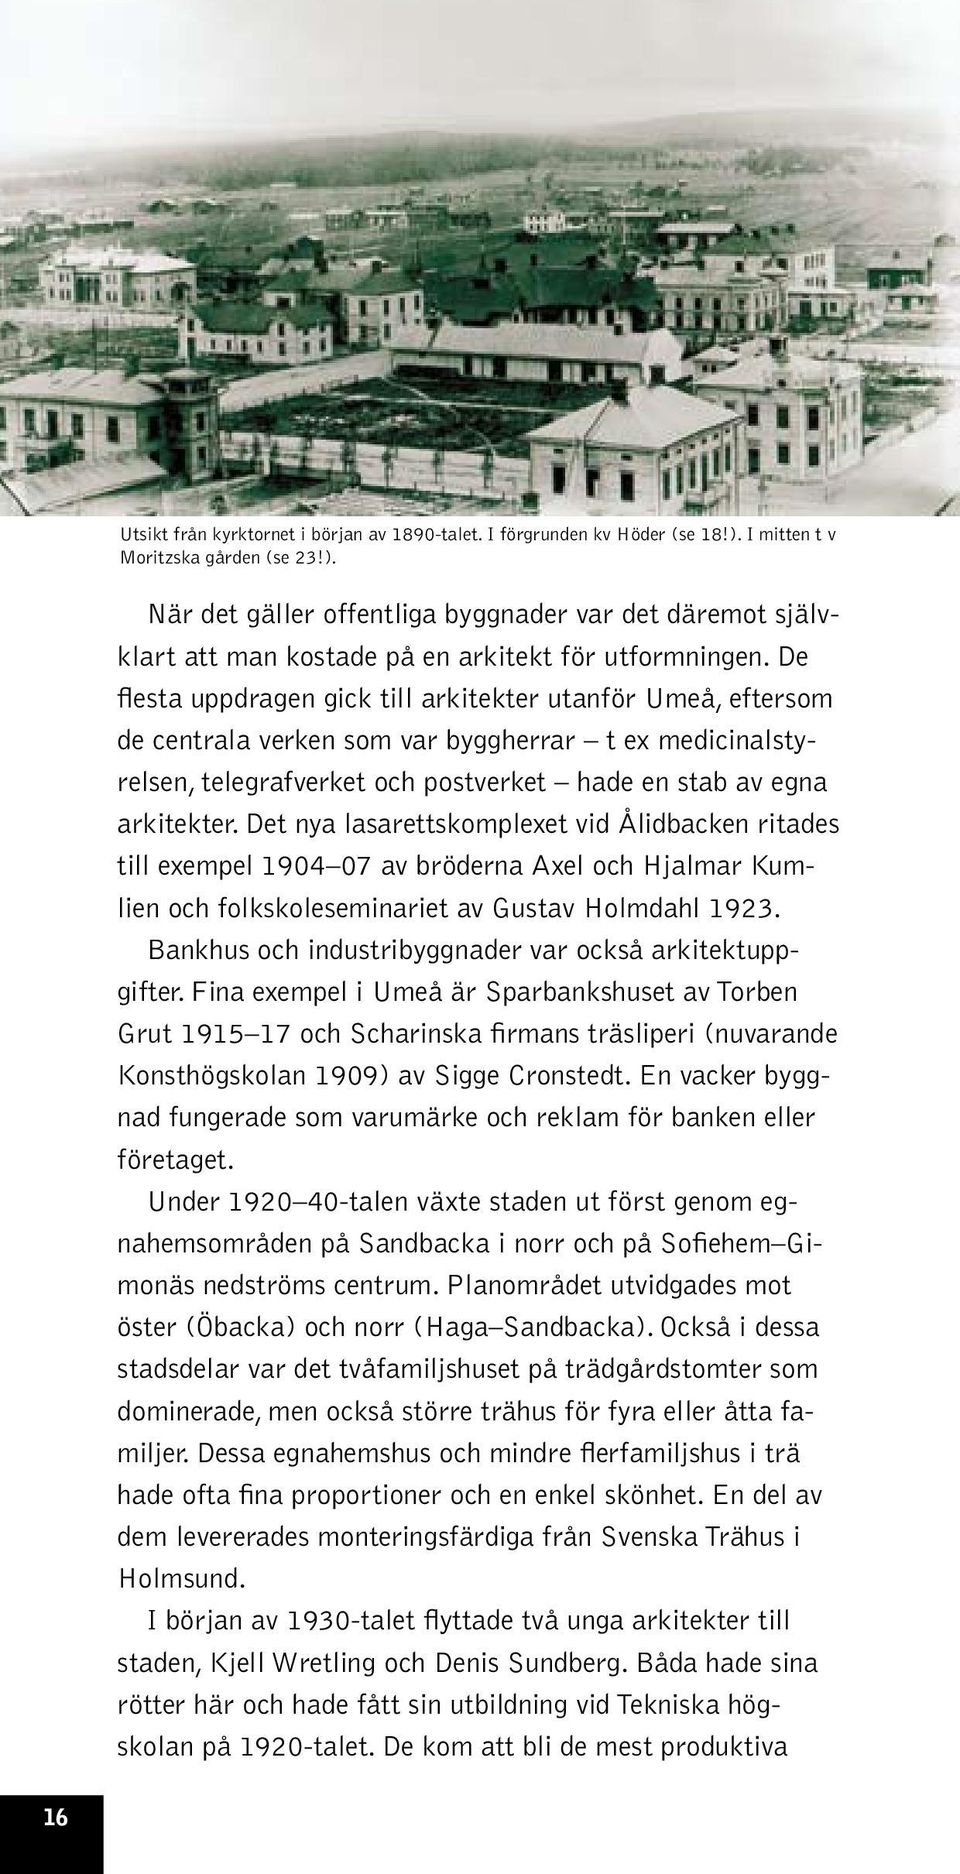 Det nya lasarettskomplexet vid Ålidbacken ritades till exempel 1904 07 av bröderna Axel och Hjalmar Kumlien och folkskoleseminariet av Gustav Holmdahl 1923.